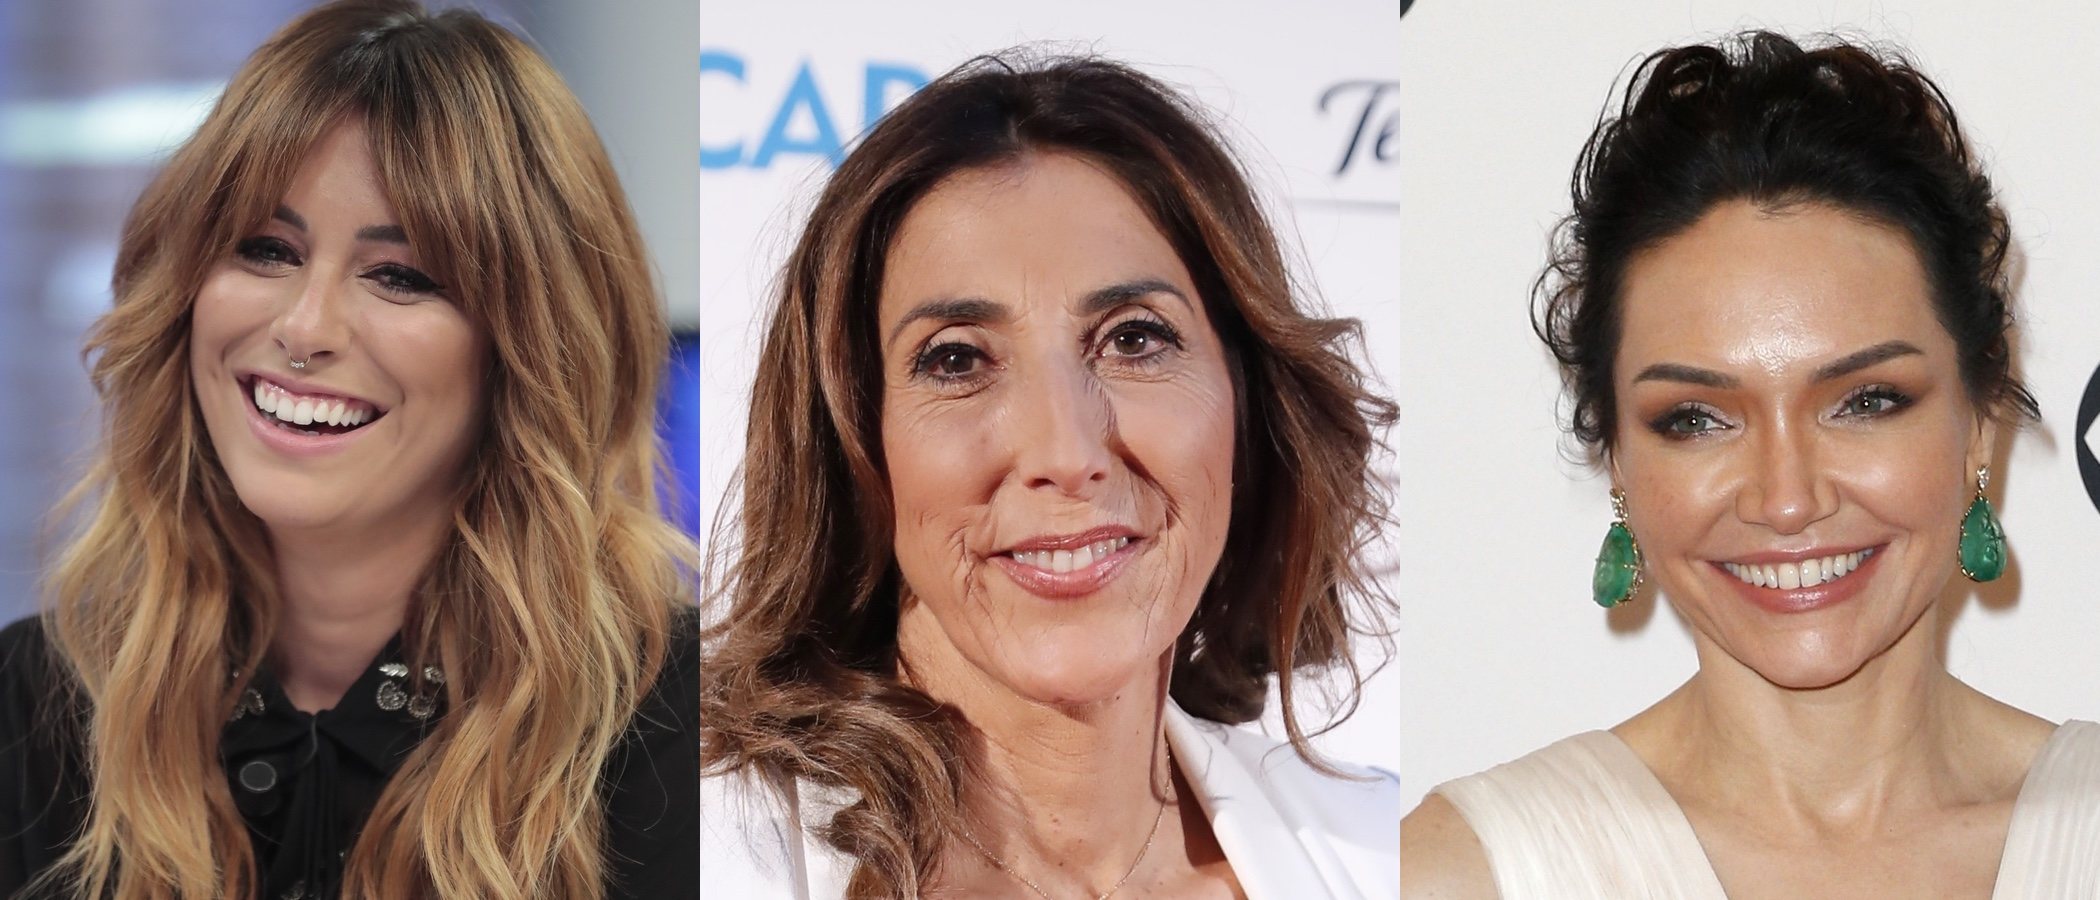 Blanca Suárez, Paz Padilla y Katrina Lenk entre los mejores beauty looks de la semana